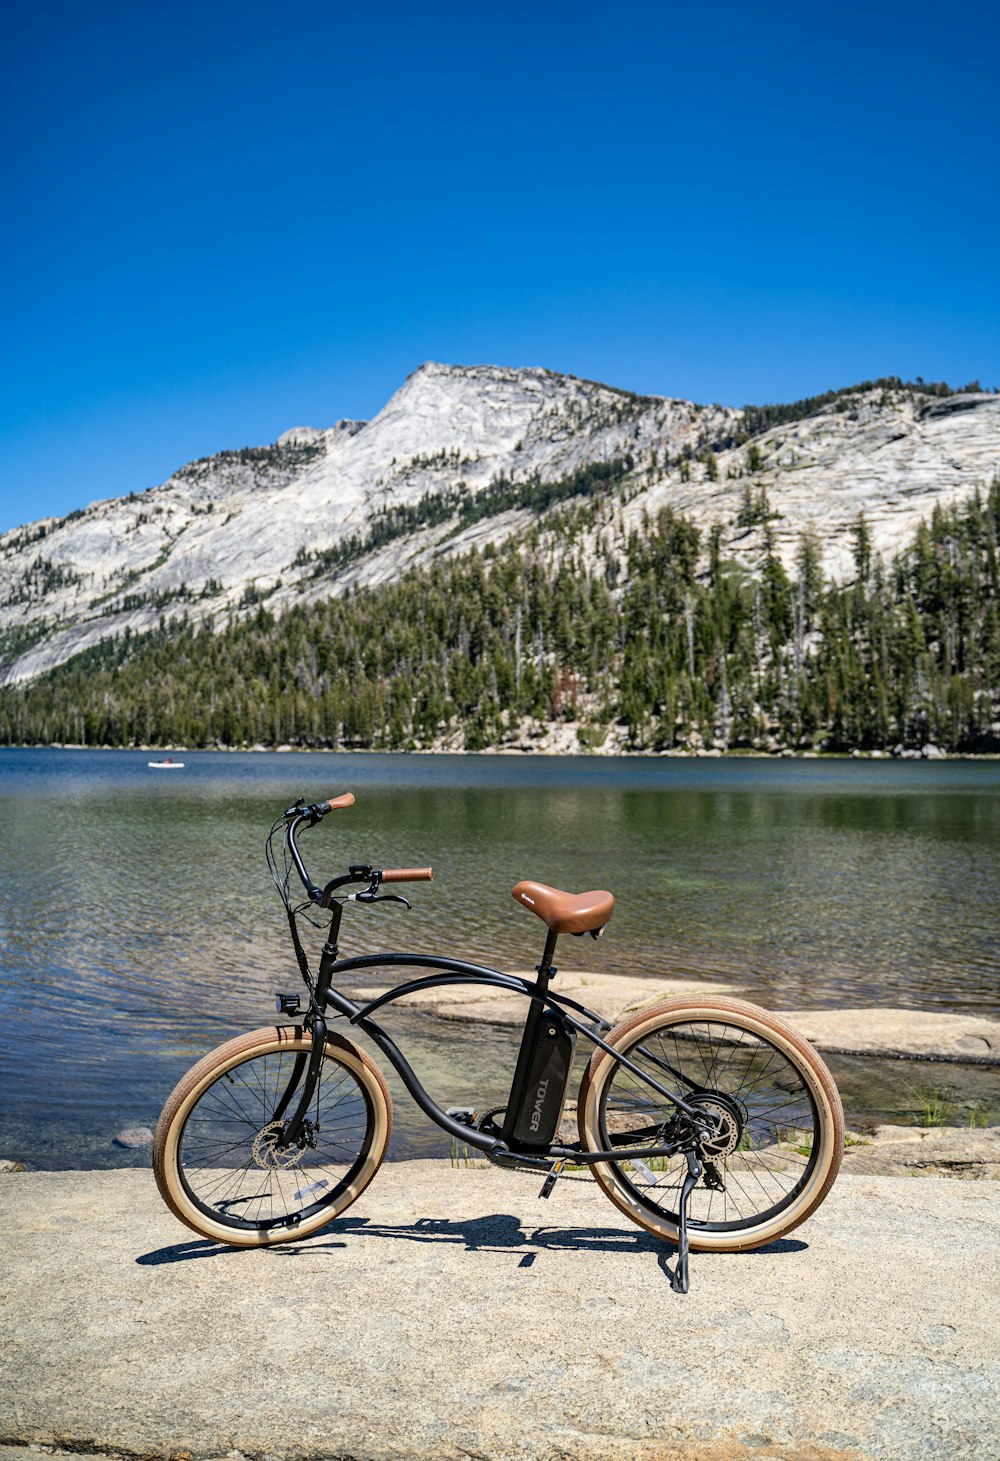 vélo noir sur le quai en bois brun près du lac pendant la journée